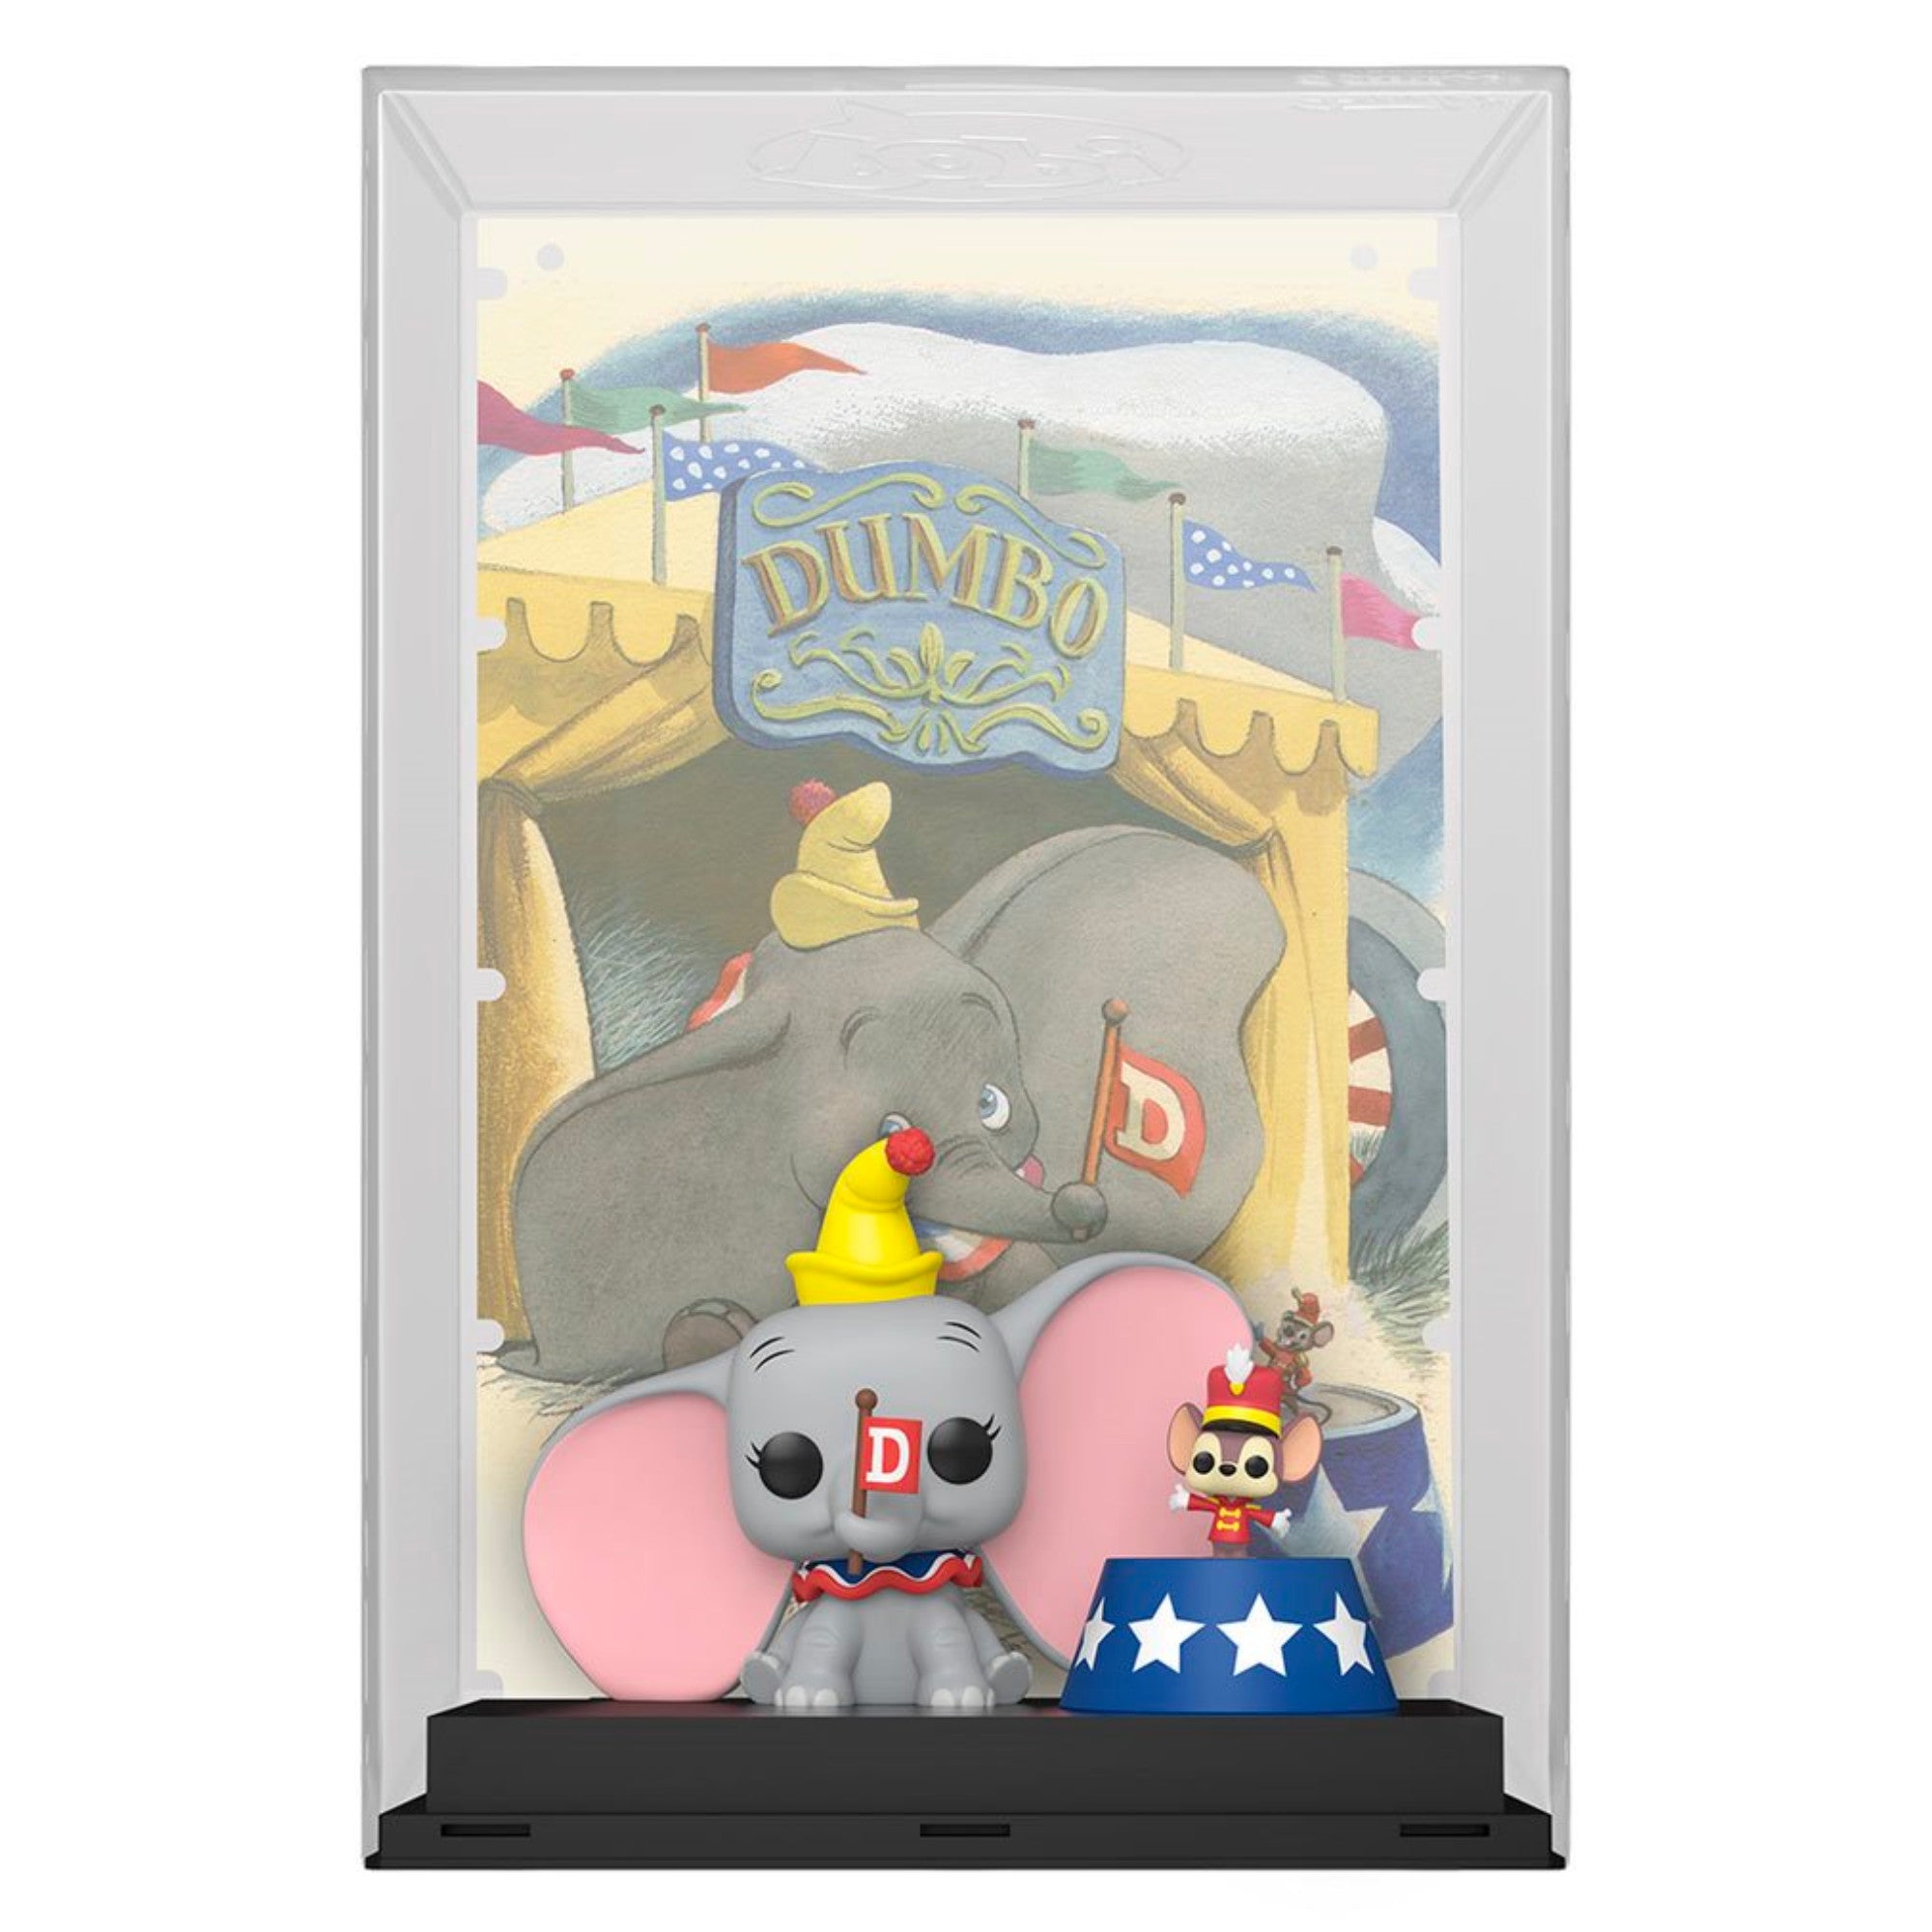 Funko POP - Disney Dumbo Movie Poster #13